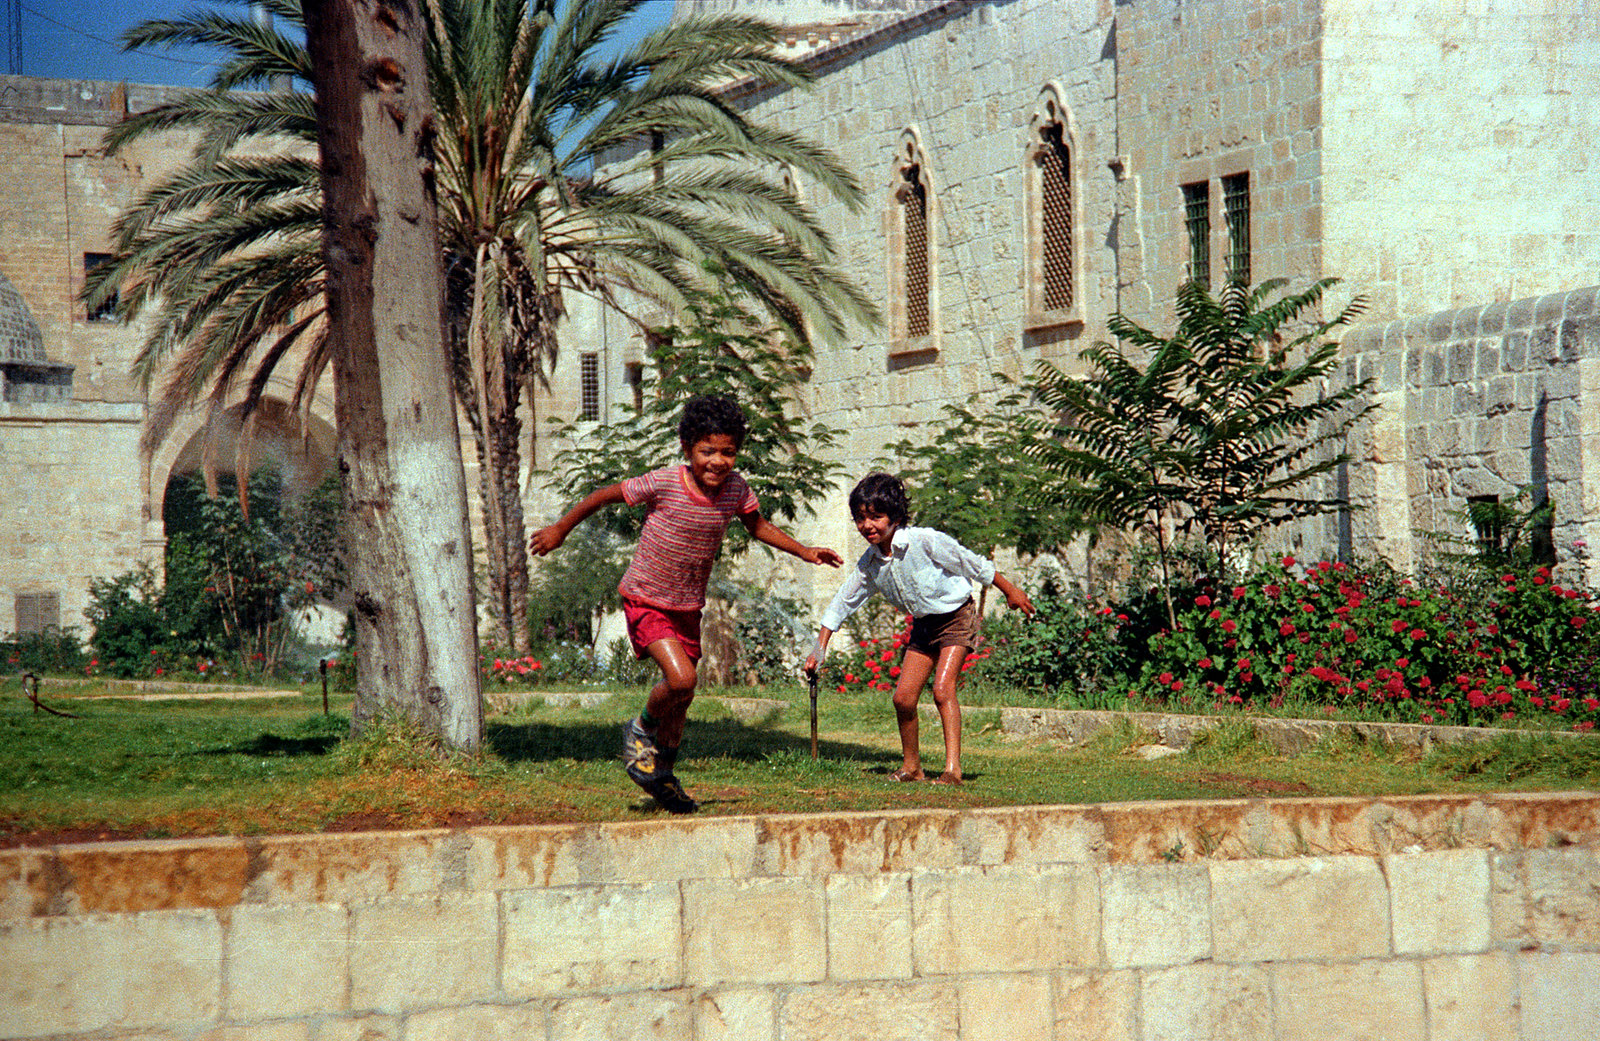 Loạt ảnh hiếm có về vùng đất thánh Jerusalem năm 1979